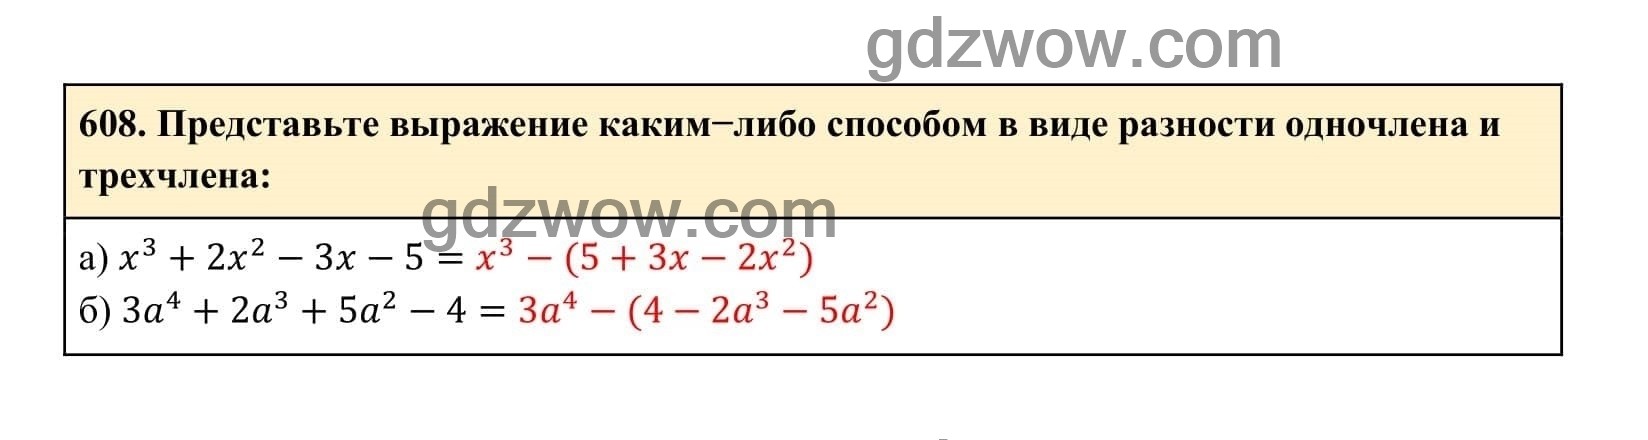 Упражнение 608 - ГДЗ по Алгебре 7 класс Учебник Макарычев (решебник) - GDZwow